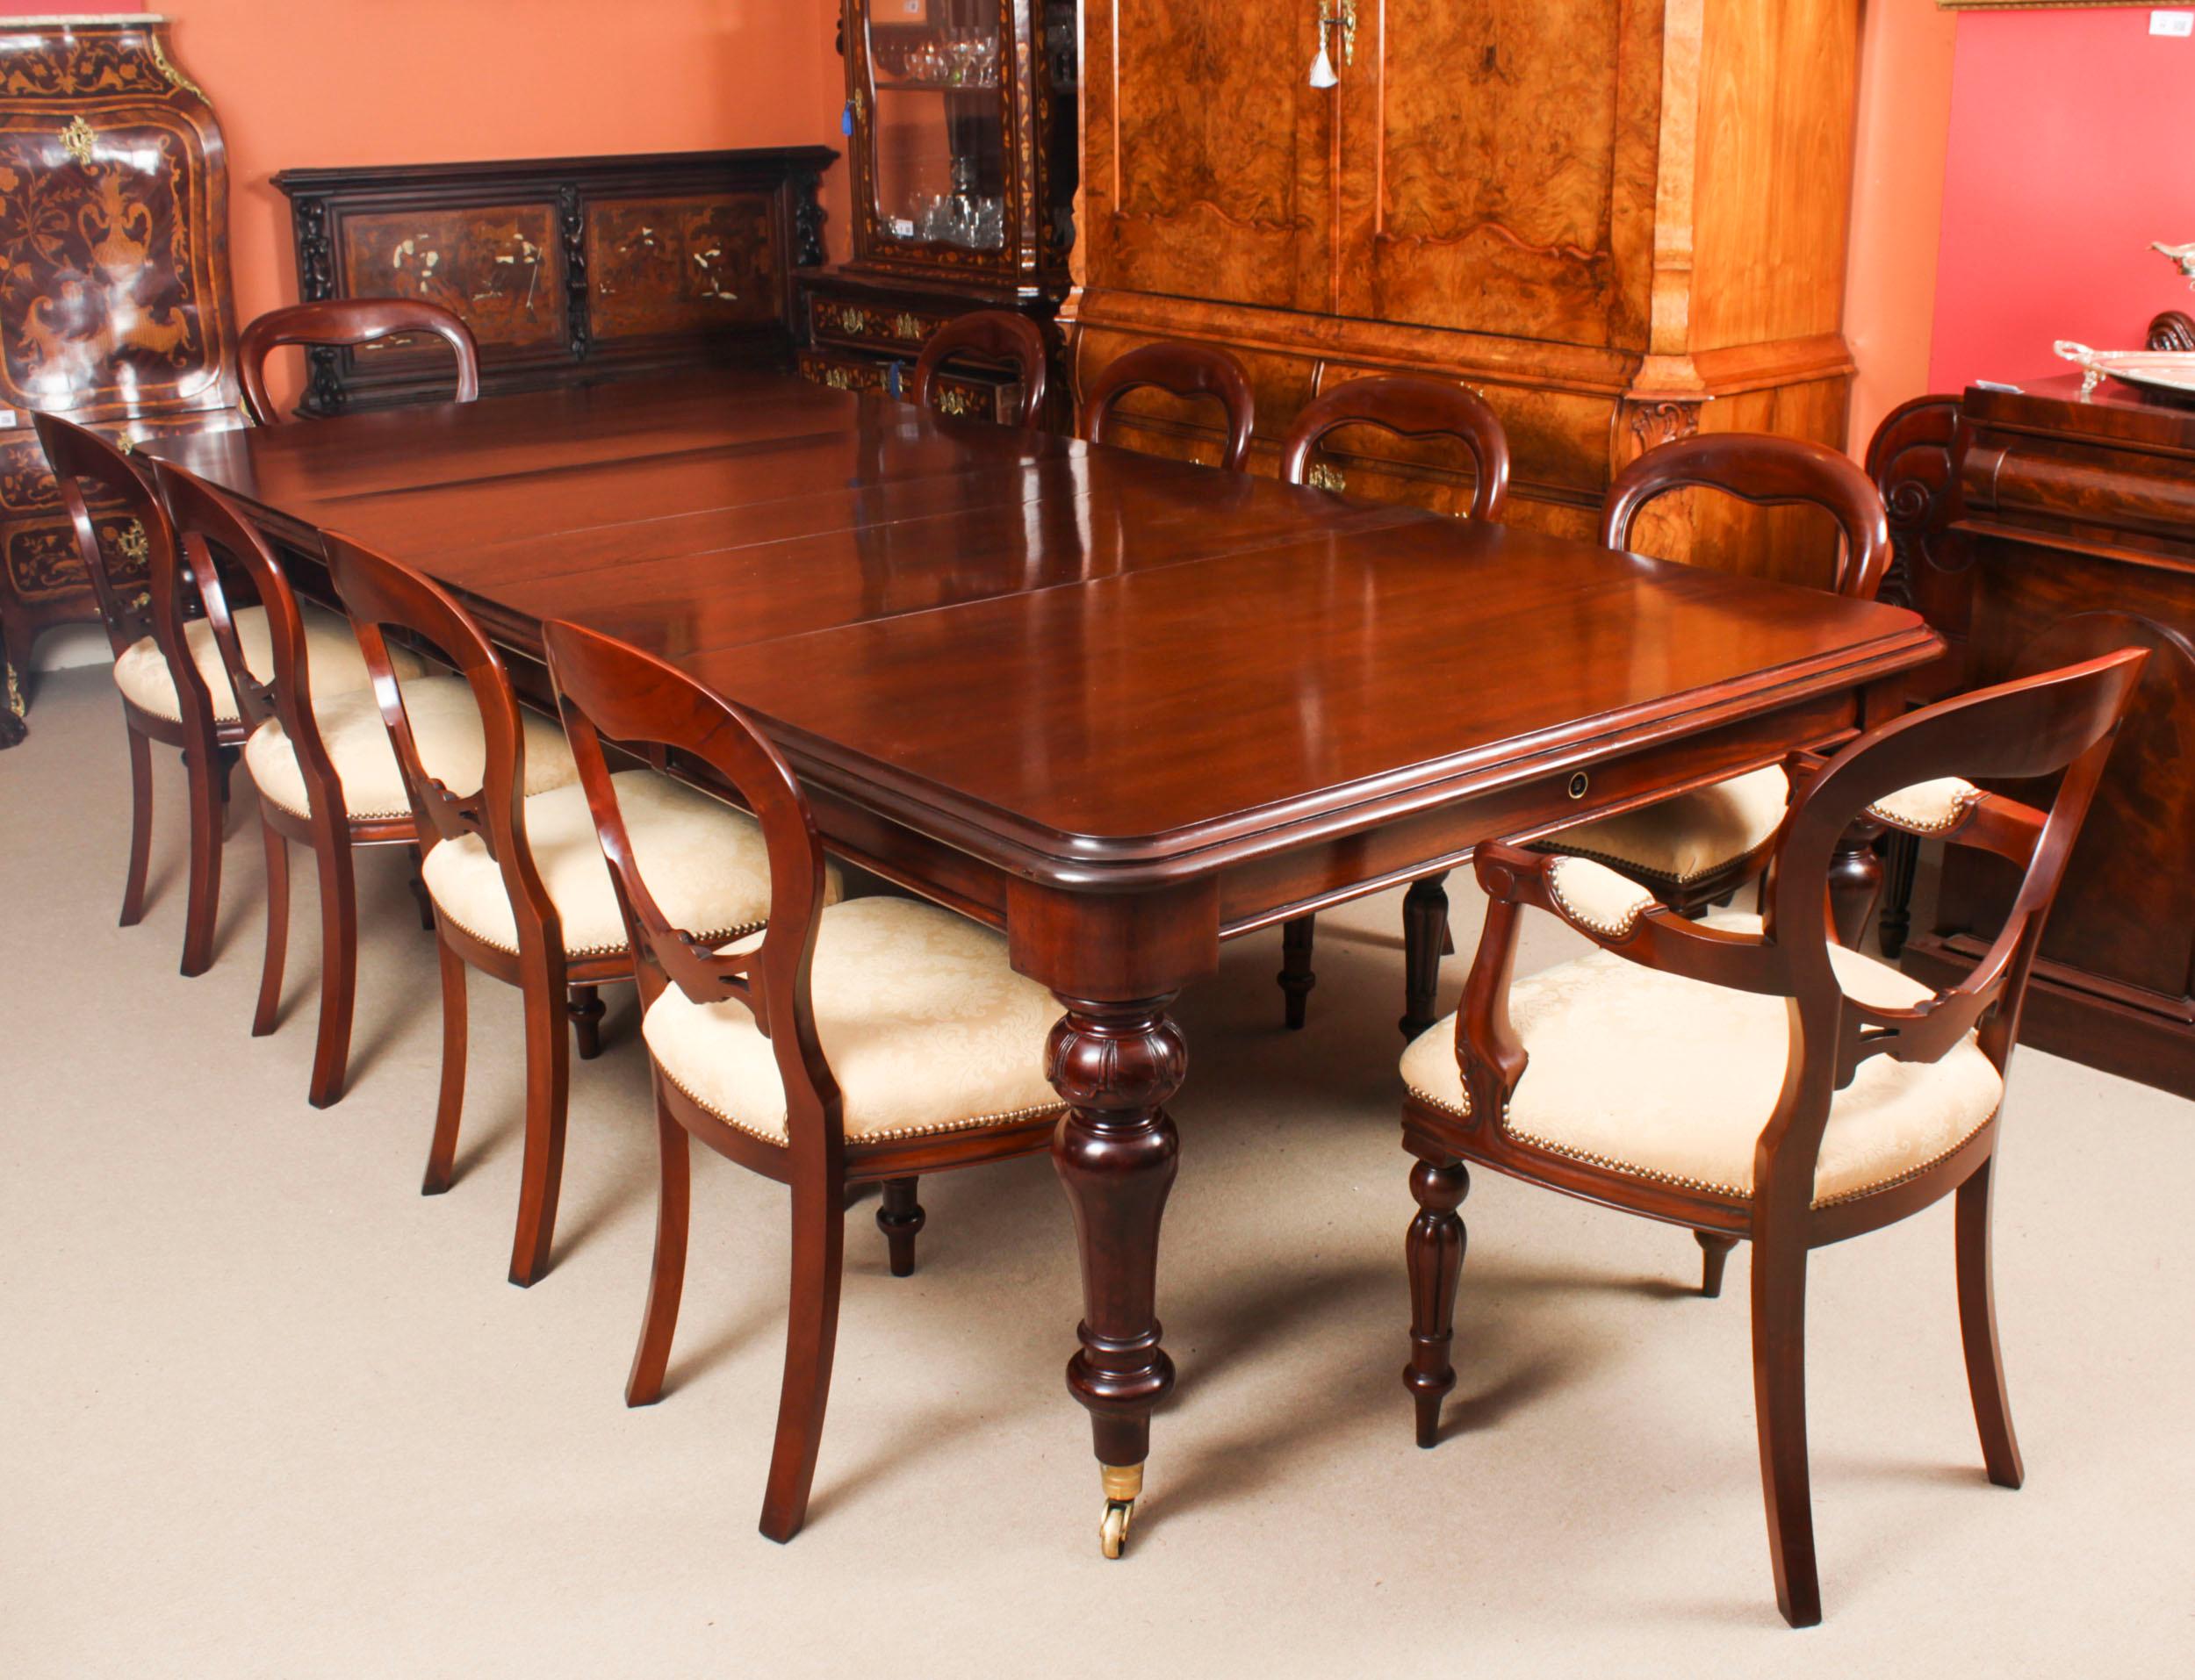 Il s'agit d'une magnifique table de salle à manger ancienne en acajou massif William IV pouvant accueillir confortablement dix convives et datant de 1835 environ.

Cette magnifique table est d'une beauté époustouflante  en acajou flammé et comporte